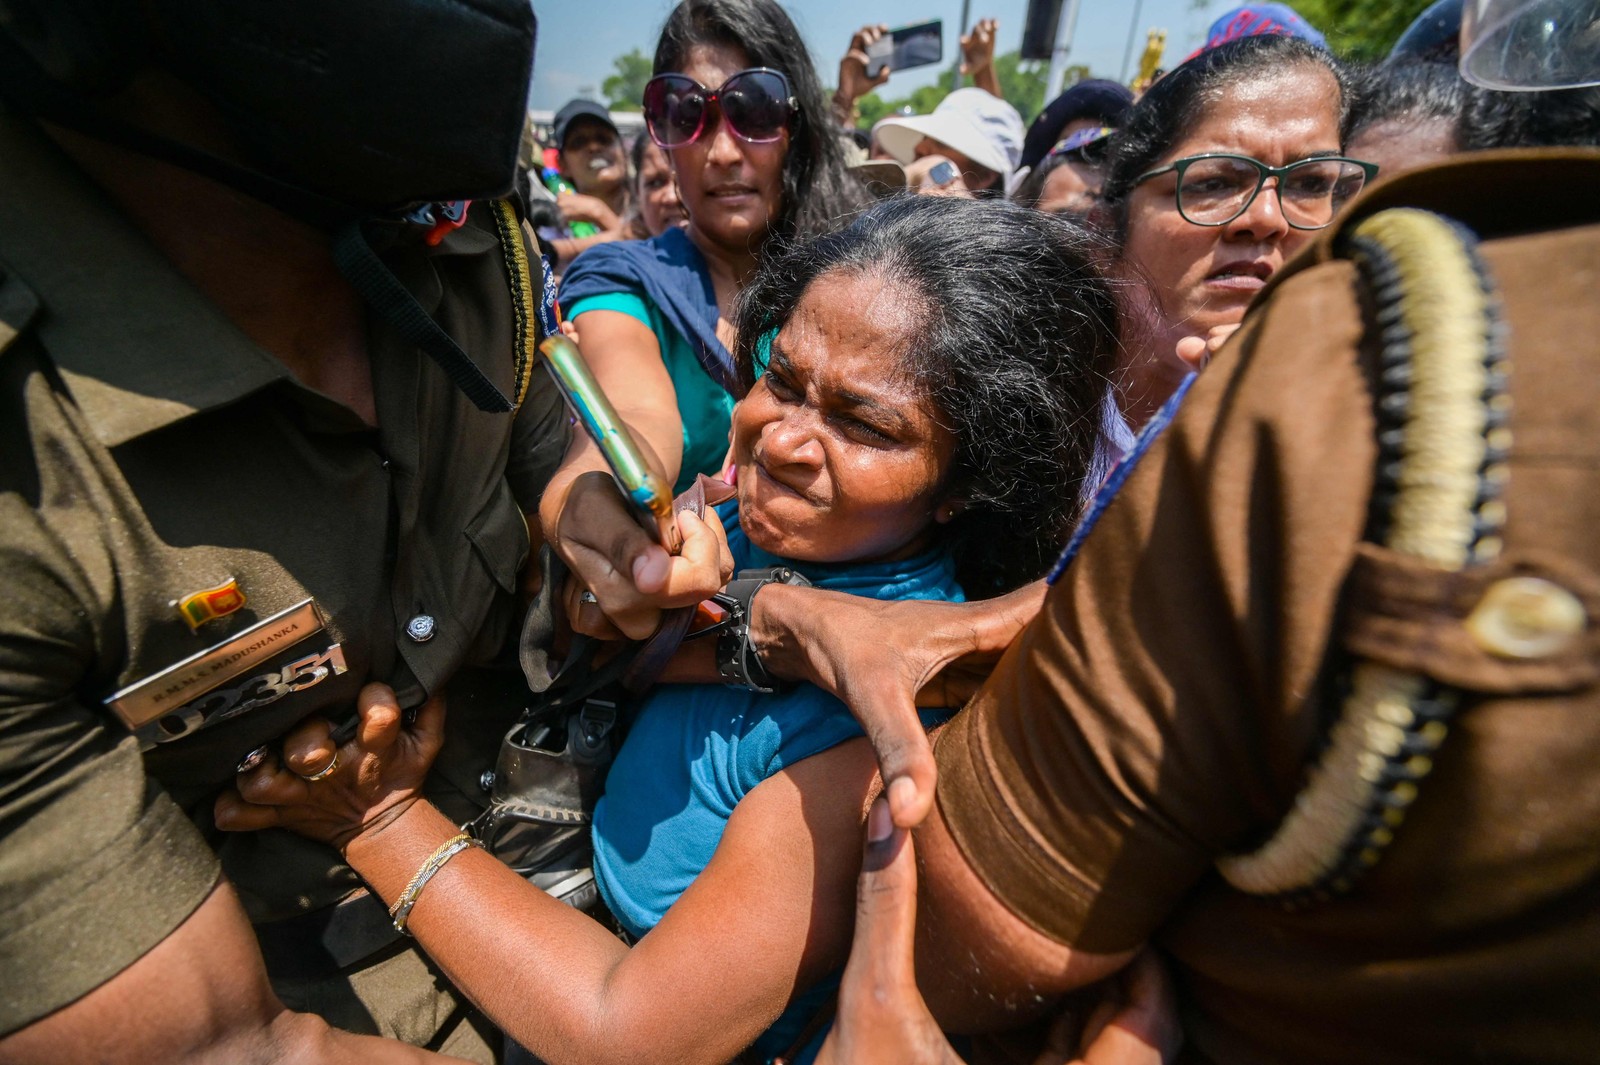 Manifestantes em conflito com a polícia em protesto organizado peldo grupo "Mulheres pelos Direitos" contra as propostas de reforma tributária e a crise econômica do país, no Dia Internacional da Mulher, em 2023, perto do prédio do parlamento em Colombo, no Sri Lanka. Ishara S. Kodikara / AFP